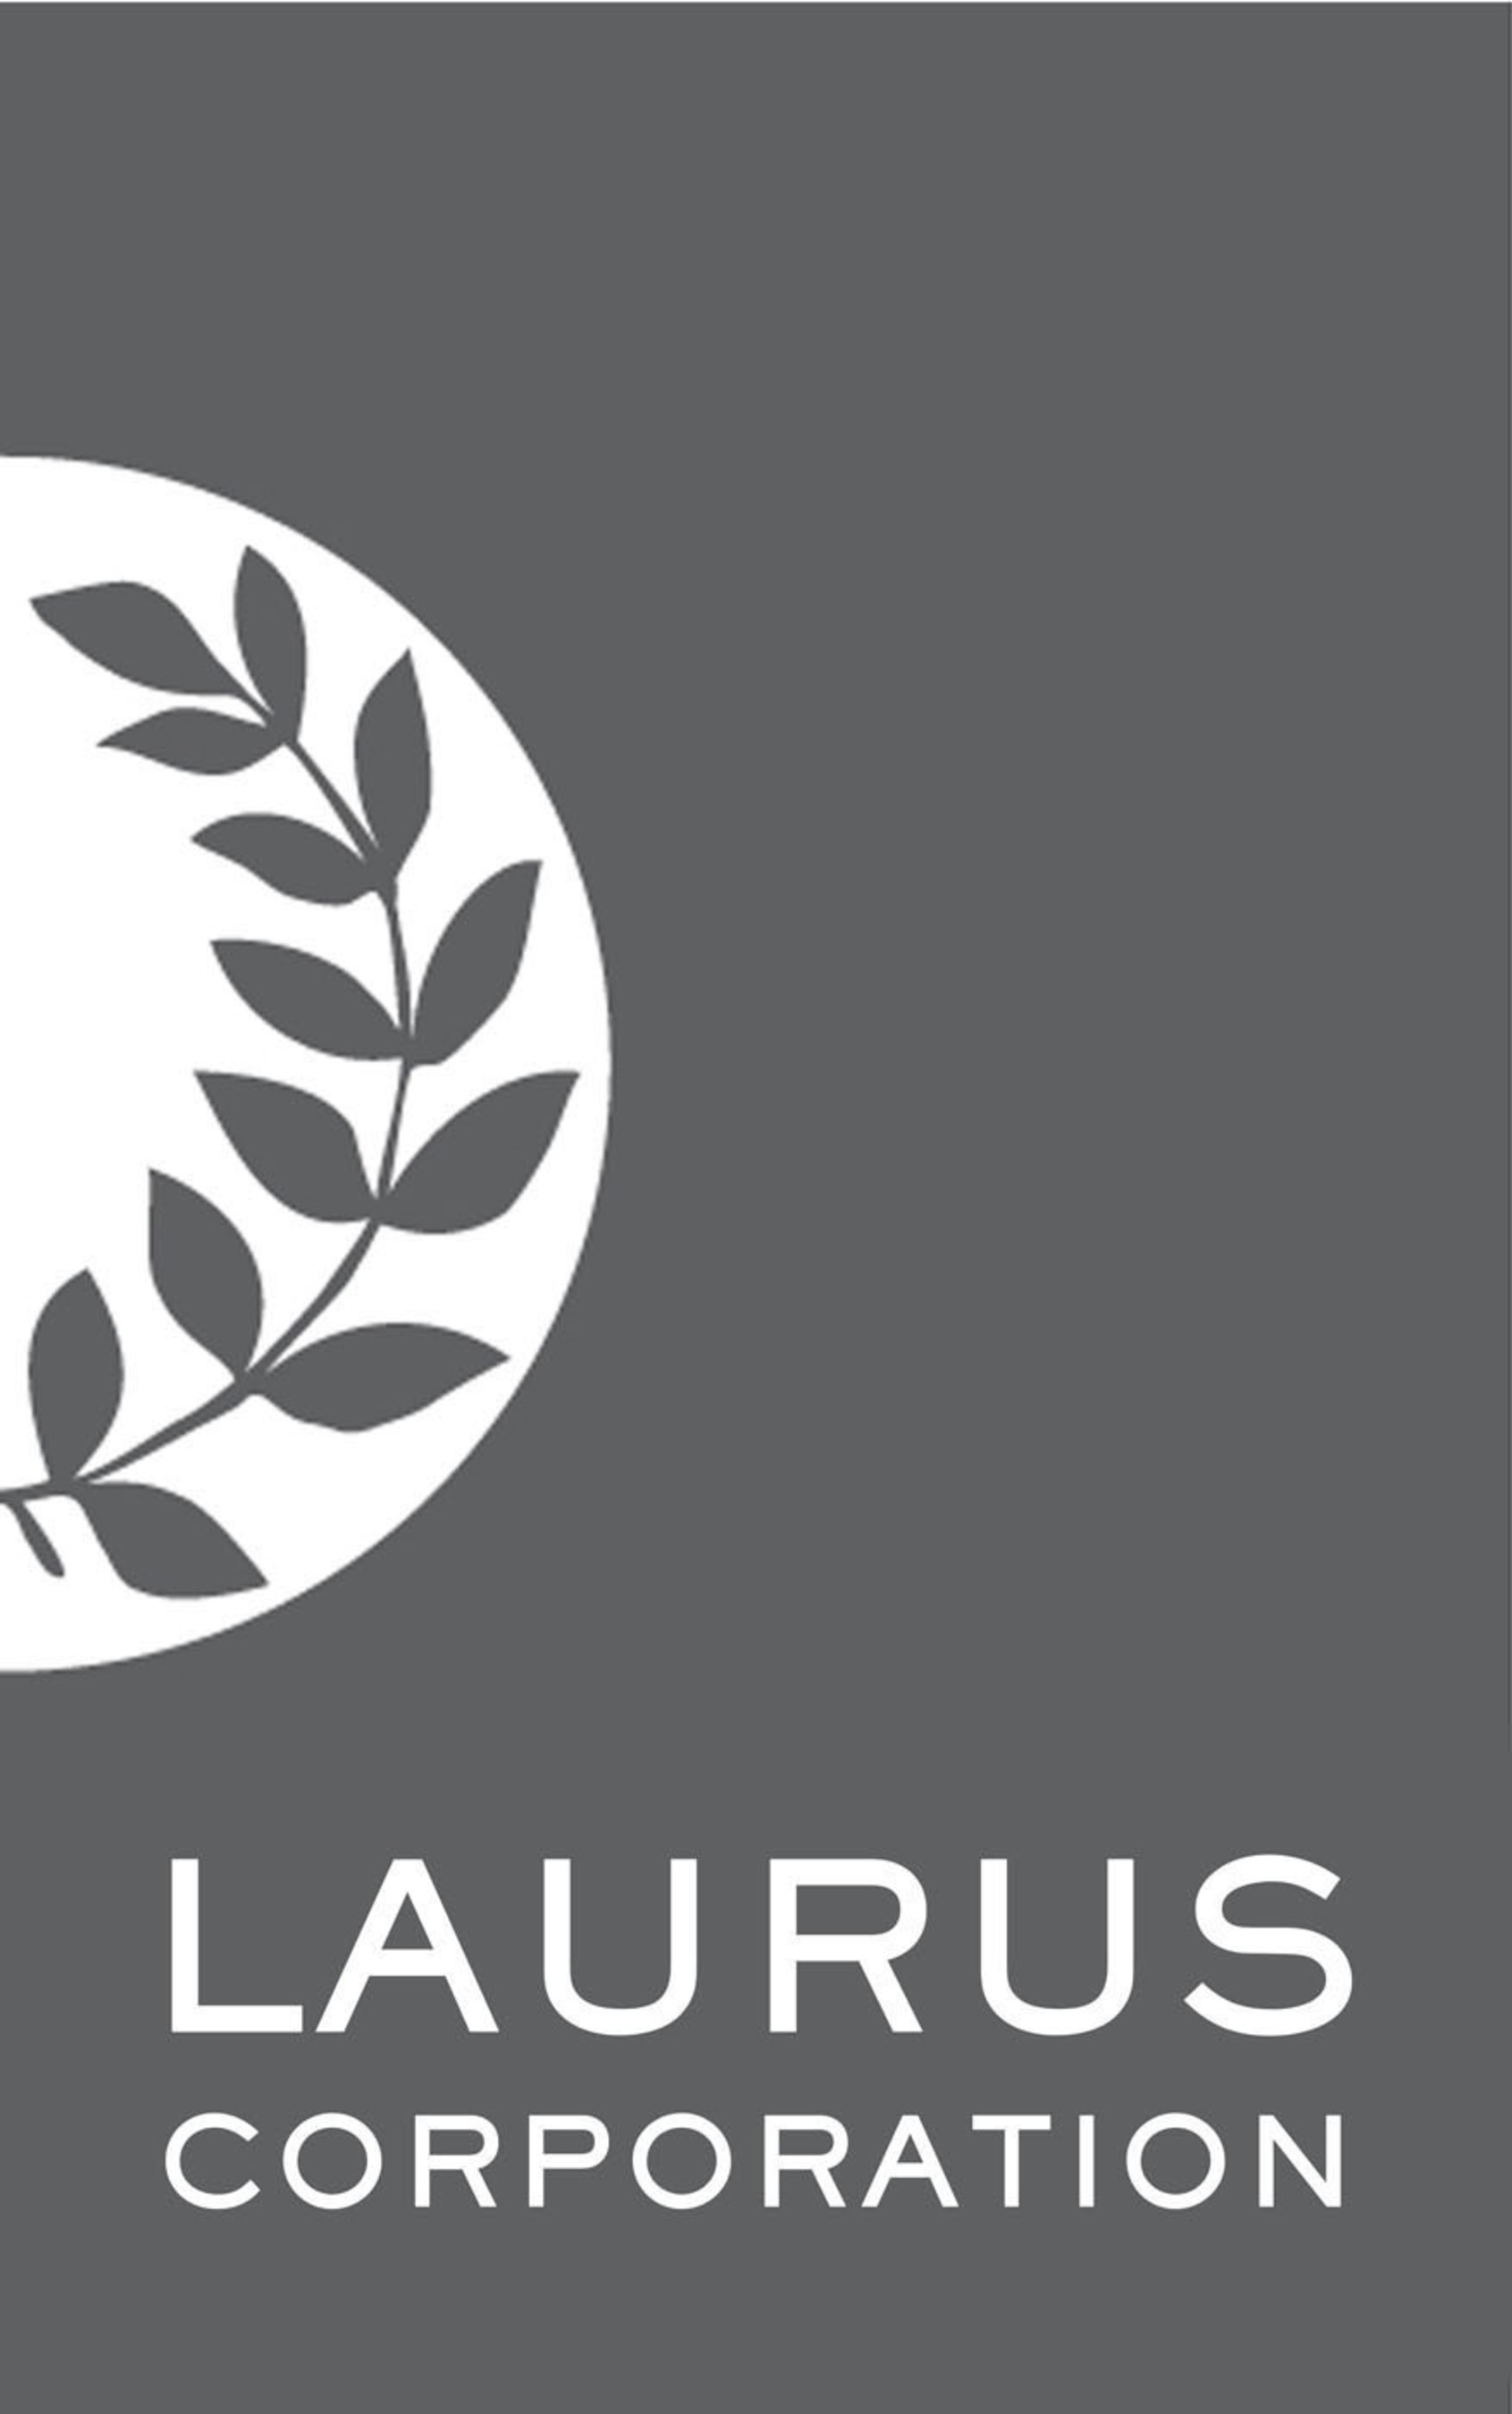 Laurus Corp. (PRNewsFoto/Laurus Corporation) (PRNewsFoto/)